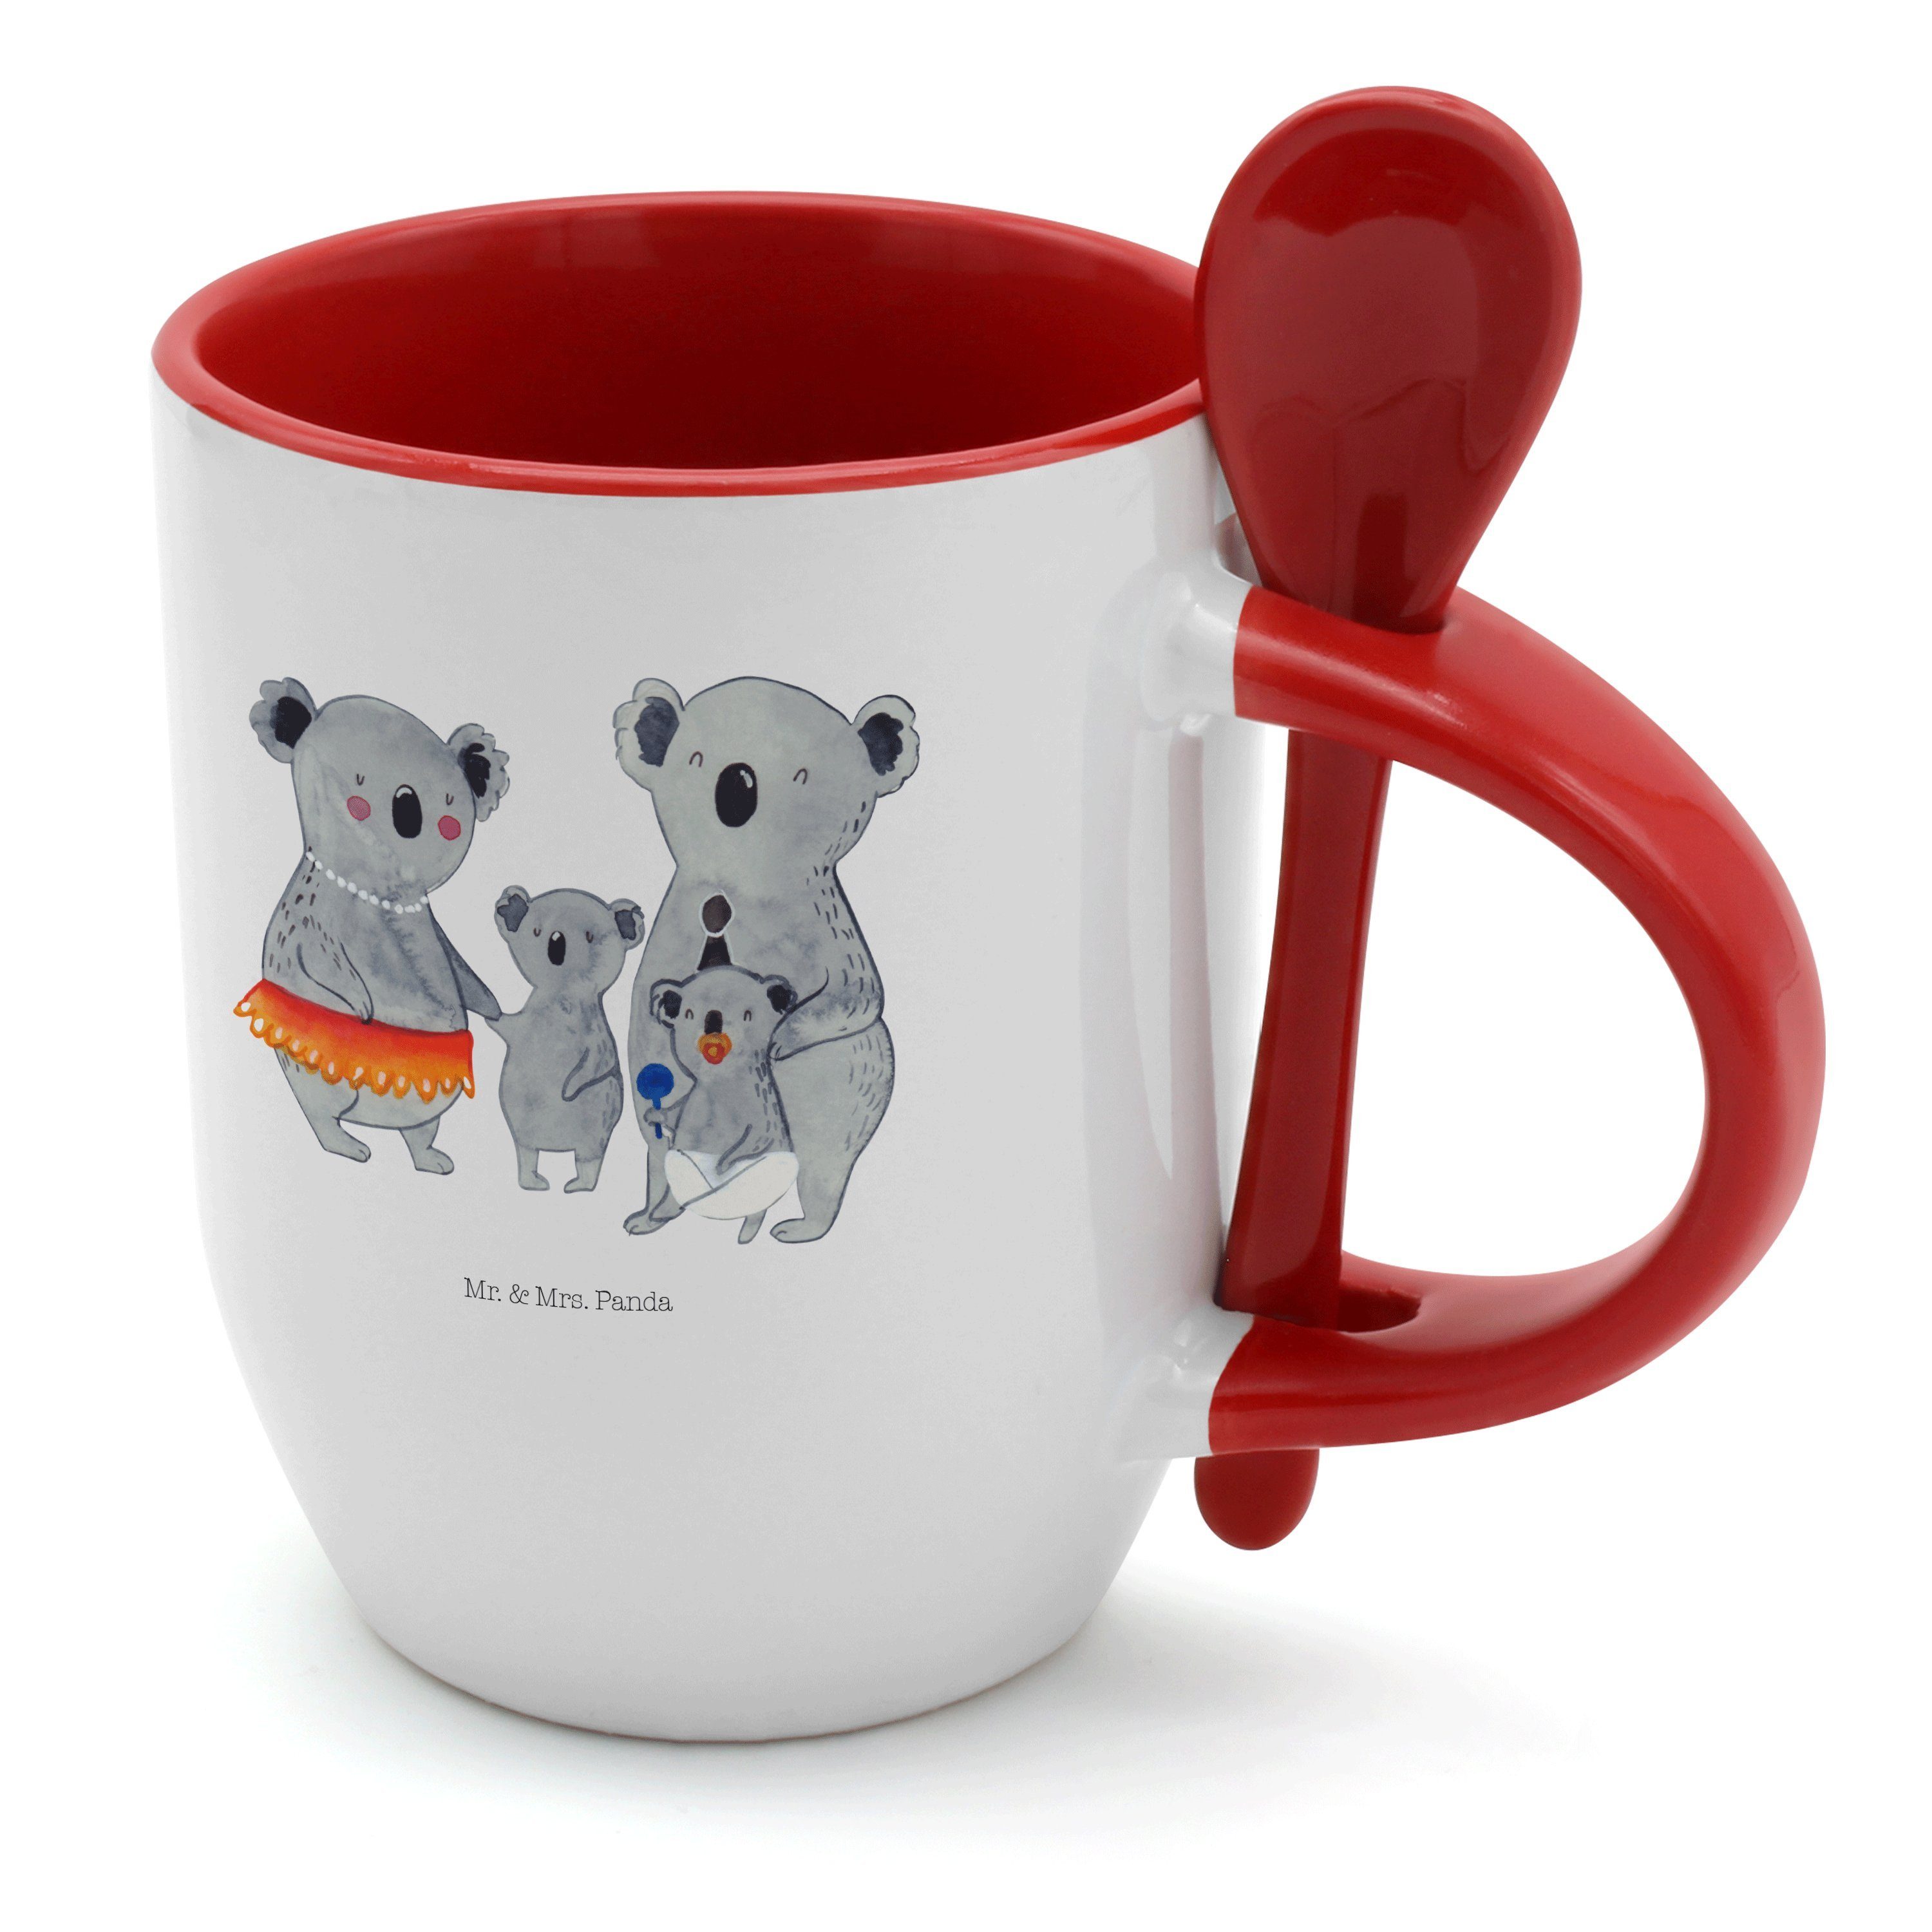 Mr. & Mrs. Panda Tasse Koala Familie - Weiß - Geschenk, Familienleben, Oma, Kinder, Koalas, Keramik